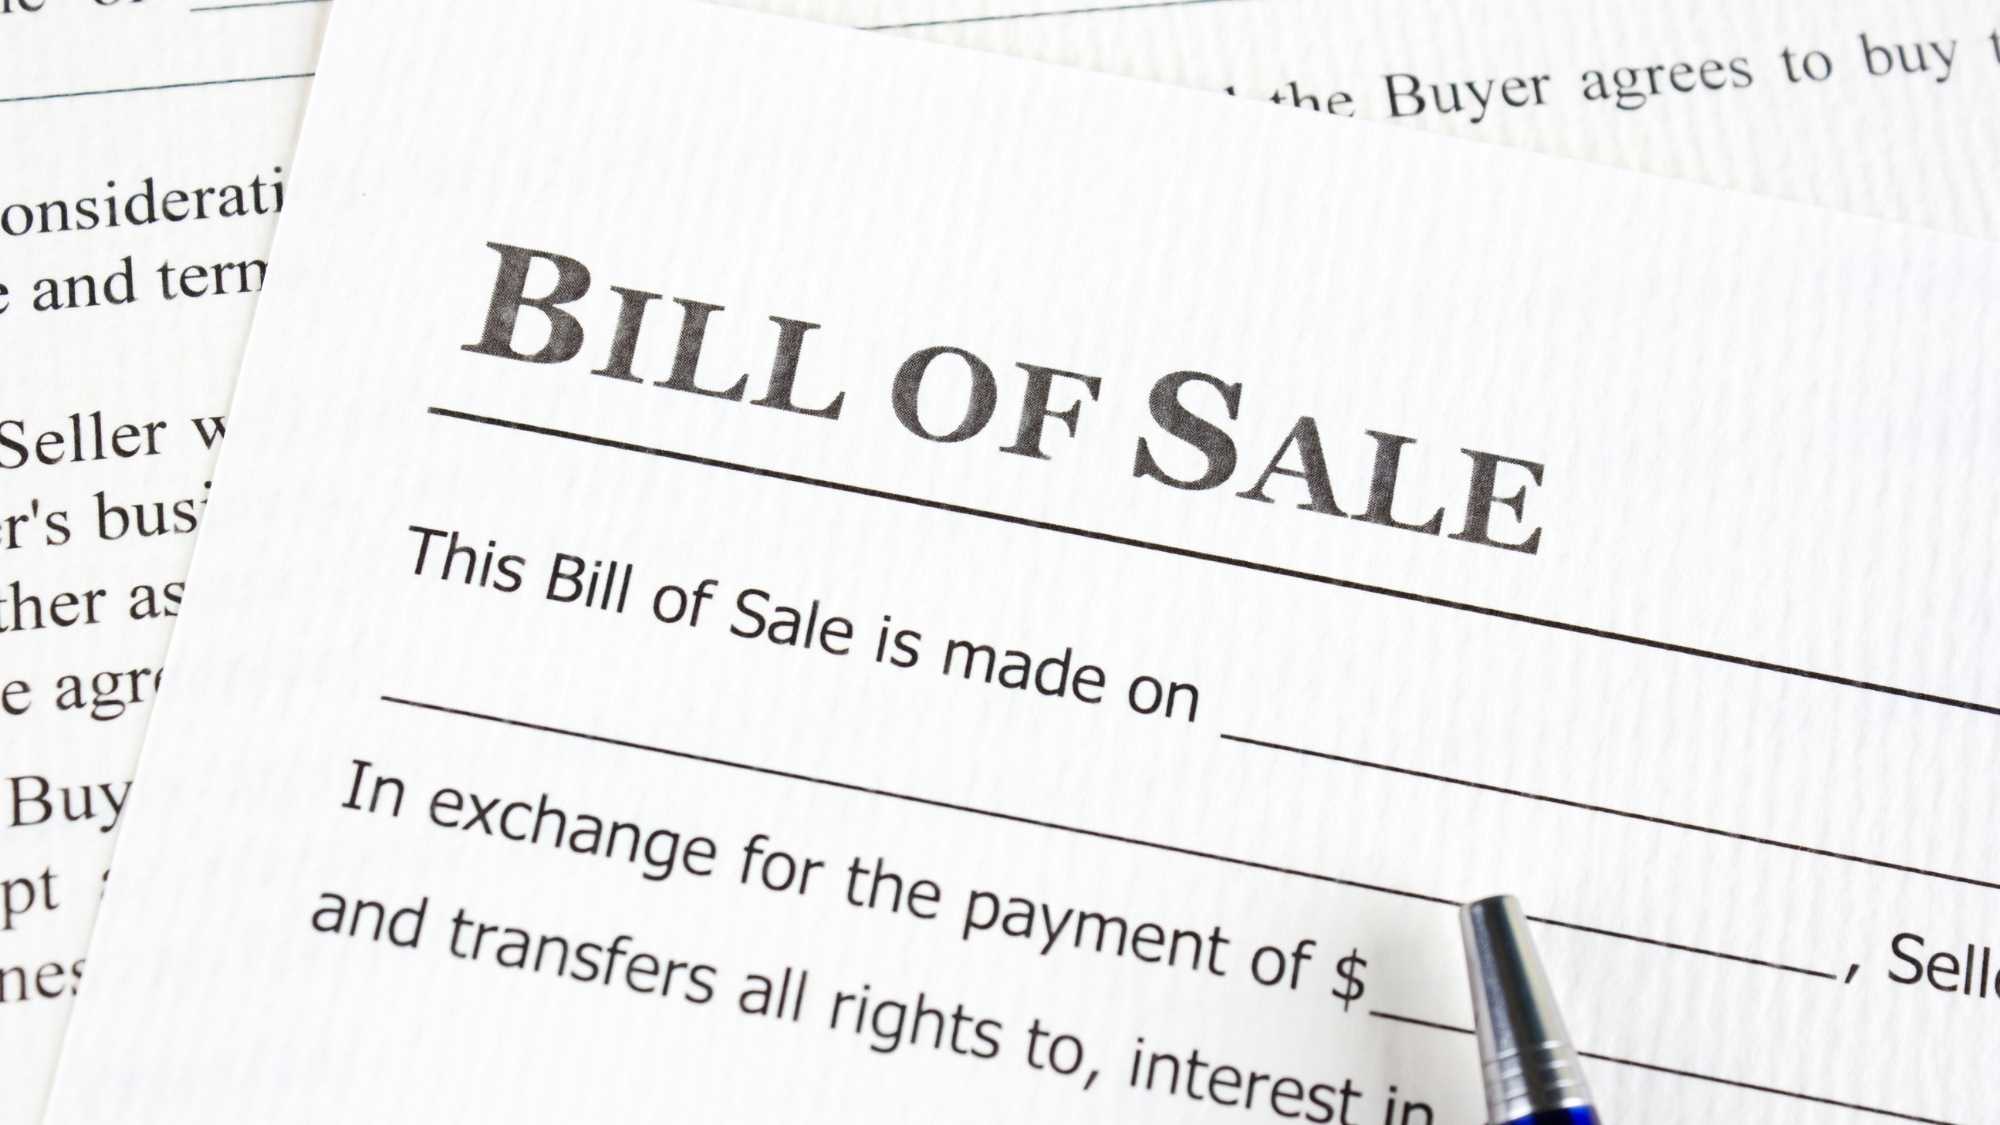 Bill of Sale con pluma en el papel.